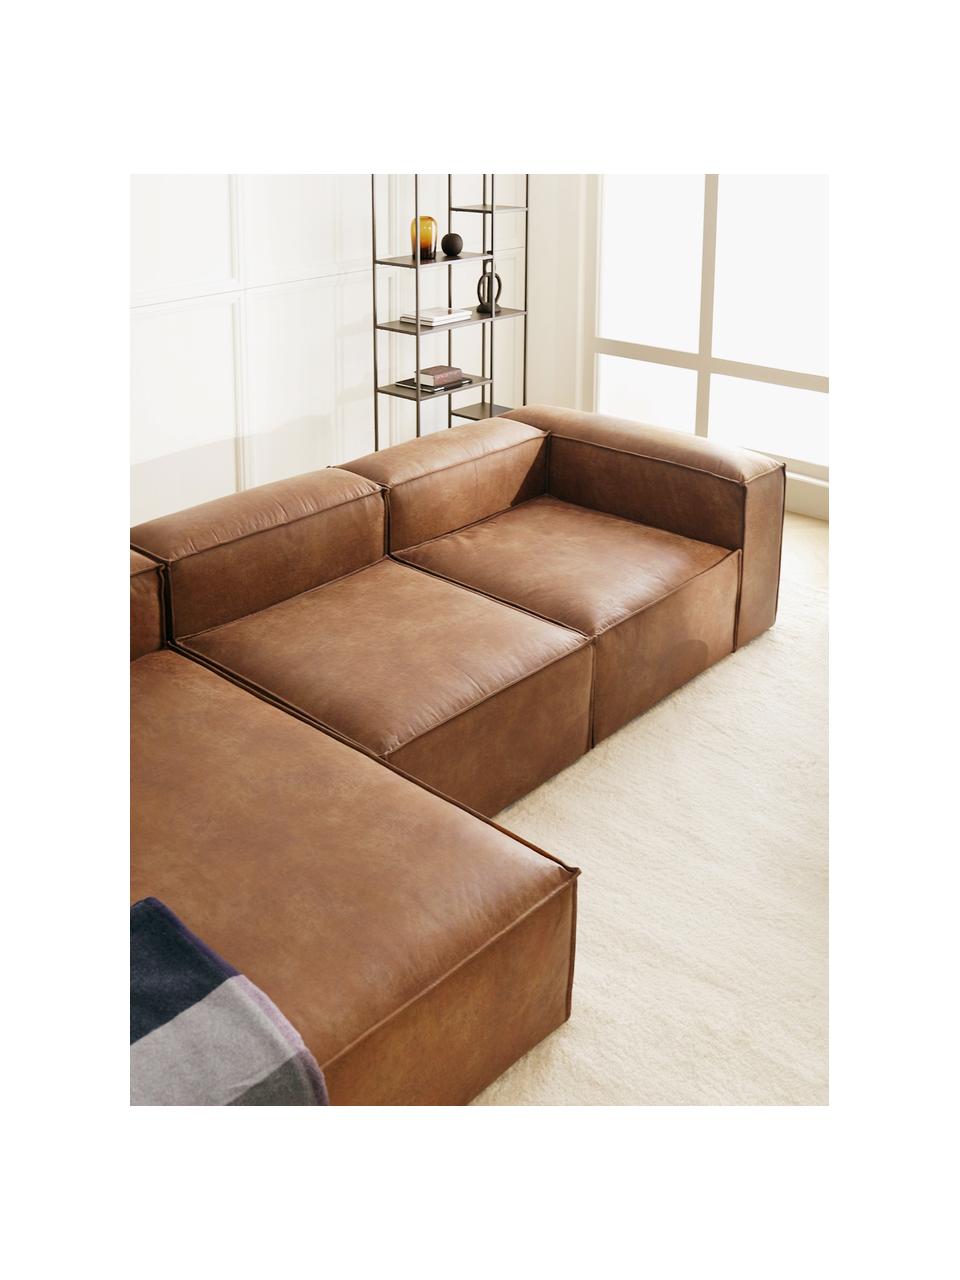 Canapé modulable en cuir recyclé brun Lennon, Cuir brun, larg. 327 x prof. 180 cm, méridienne à gauche